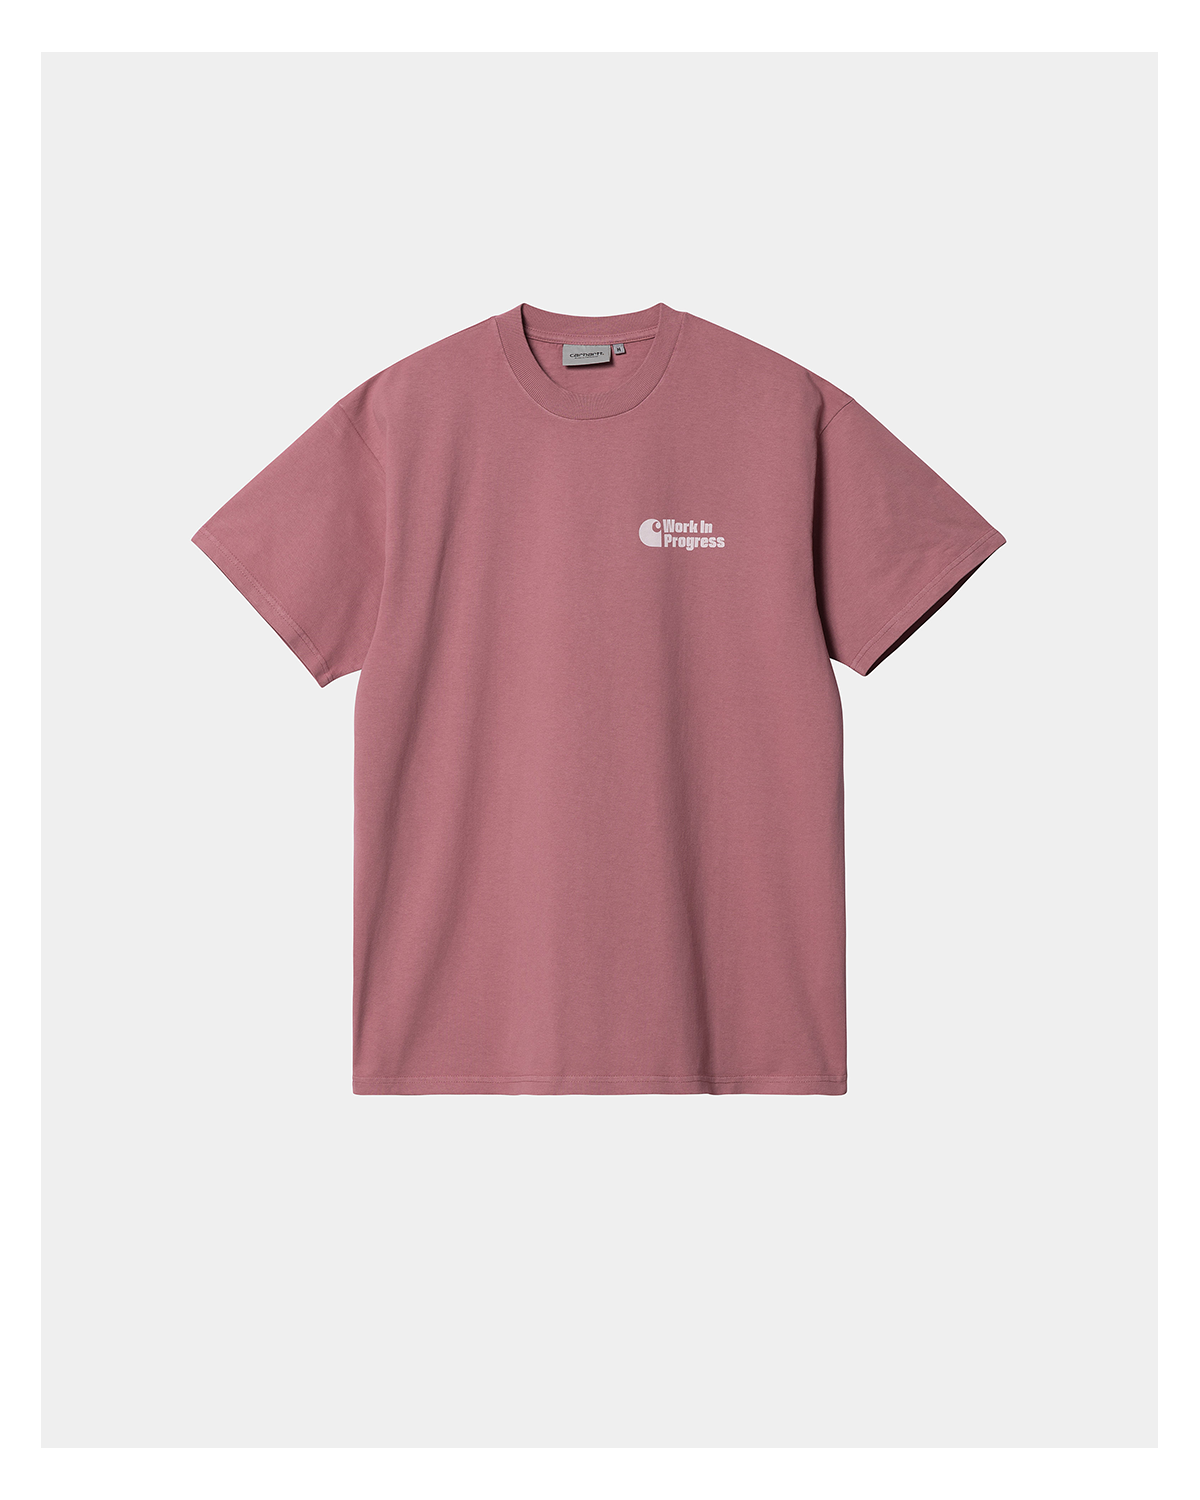 S/s Manual Tshirt